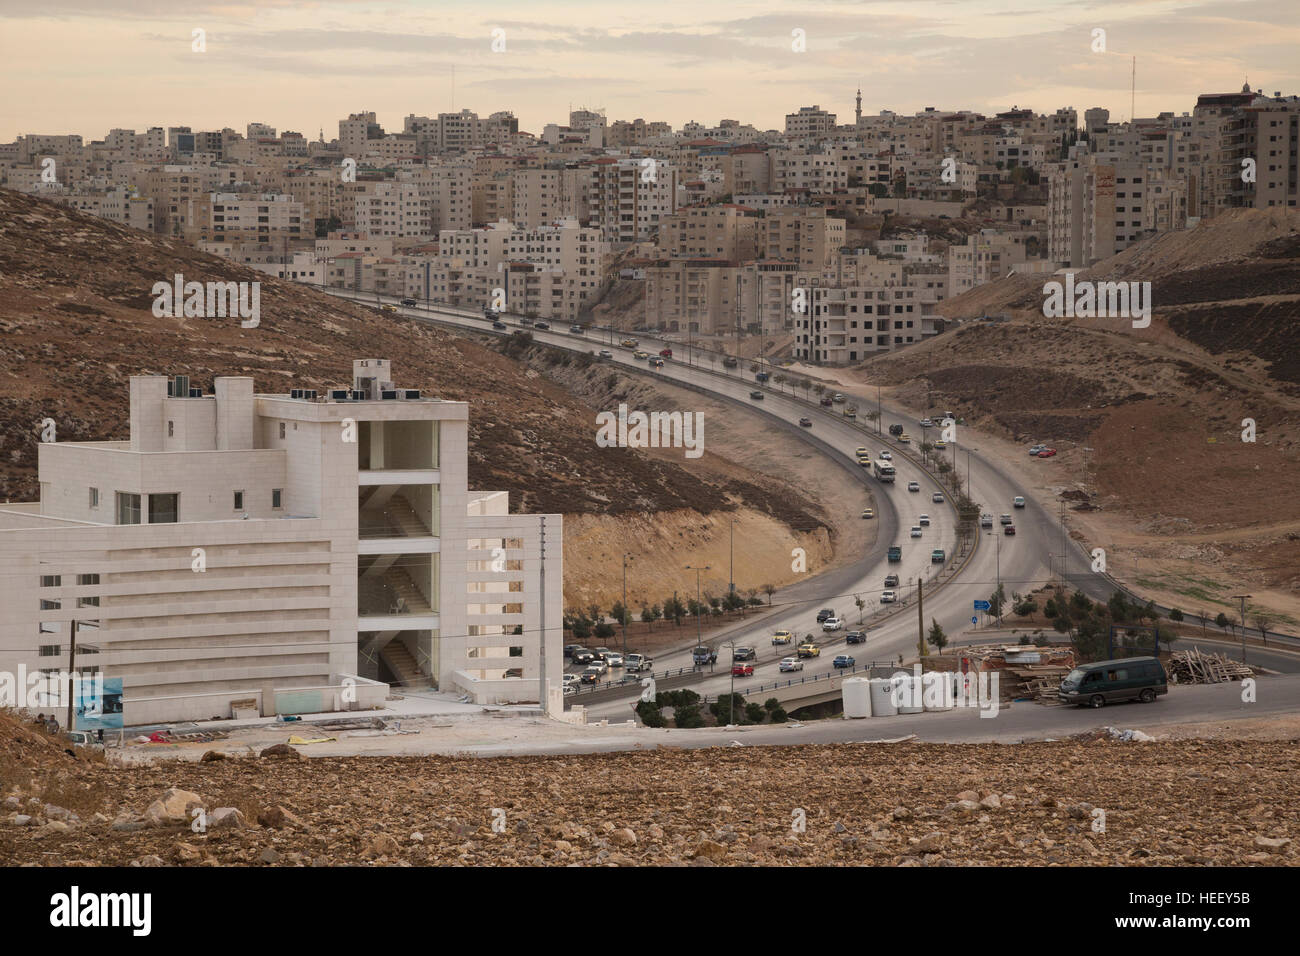 City scene - Amman, Jordan. Stock Photo